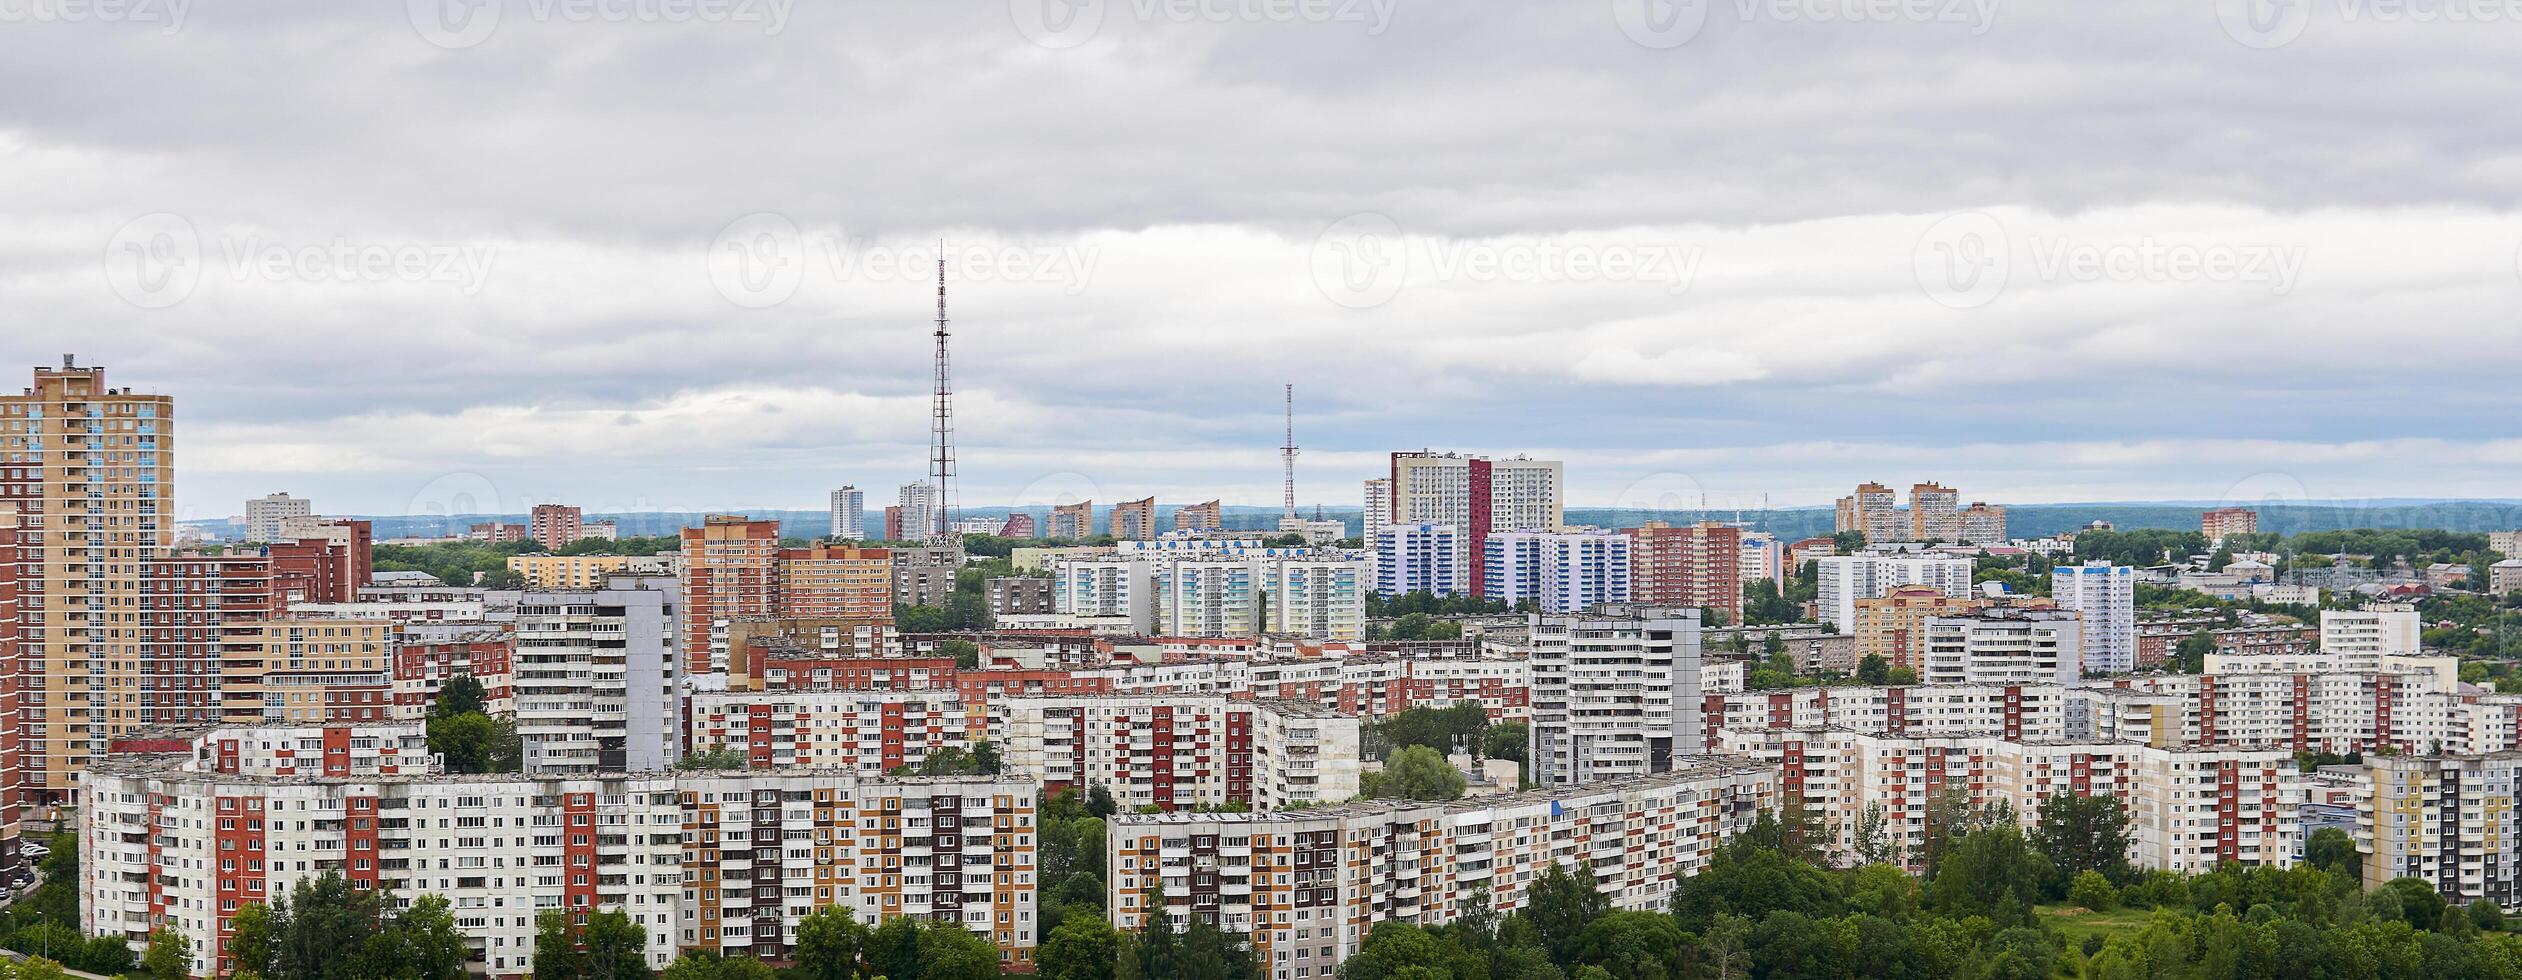 paisaje urbano con de muchos pisos residencial areas y televisión torres, parte superior ver foto